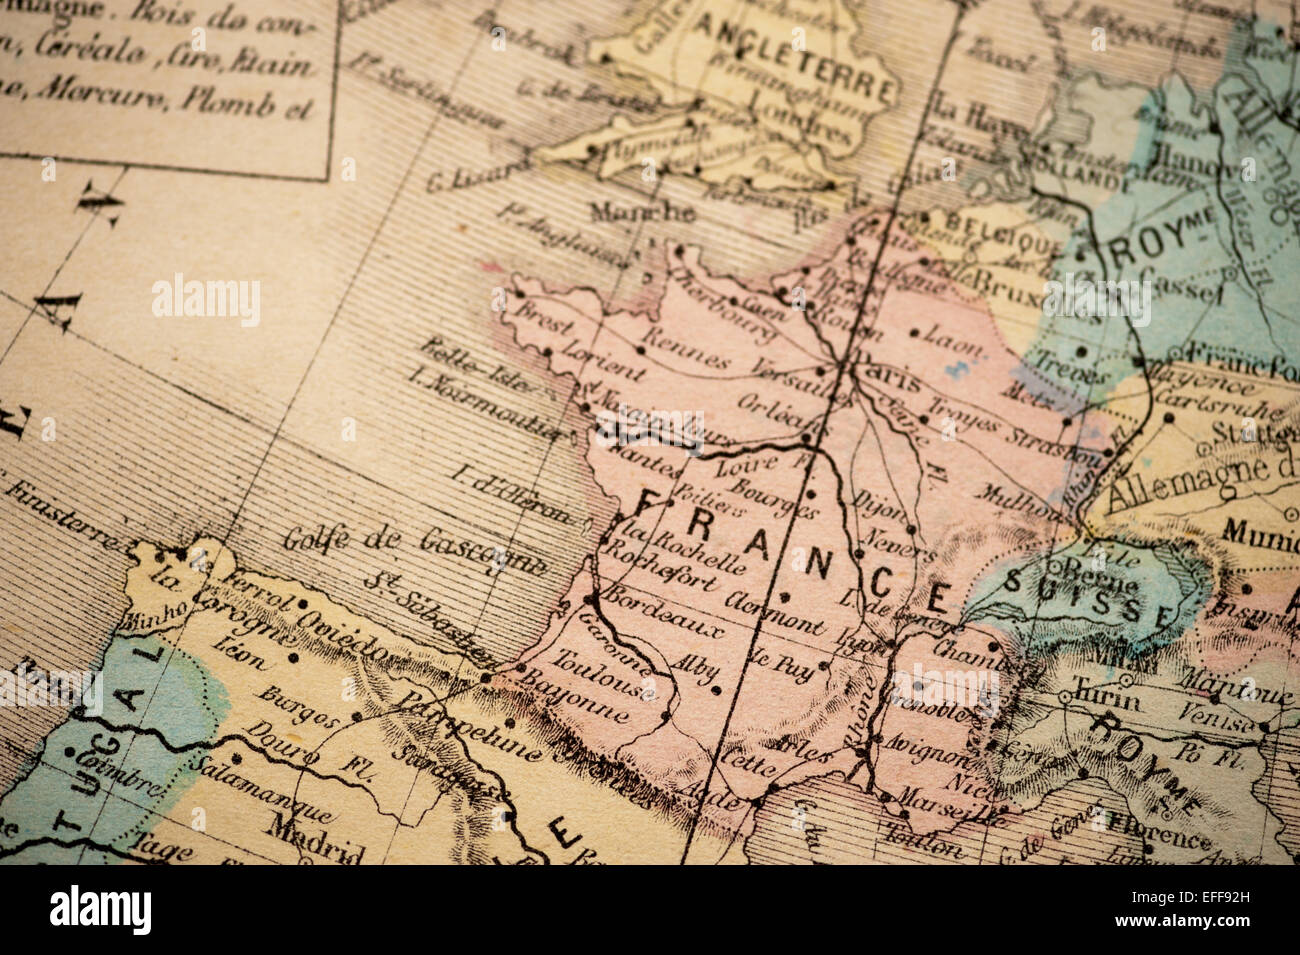 Atlas-Classique in 1869 - Antike Landkarte veröffentlicht Stockfoto